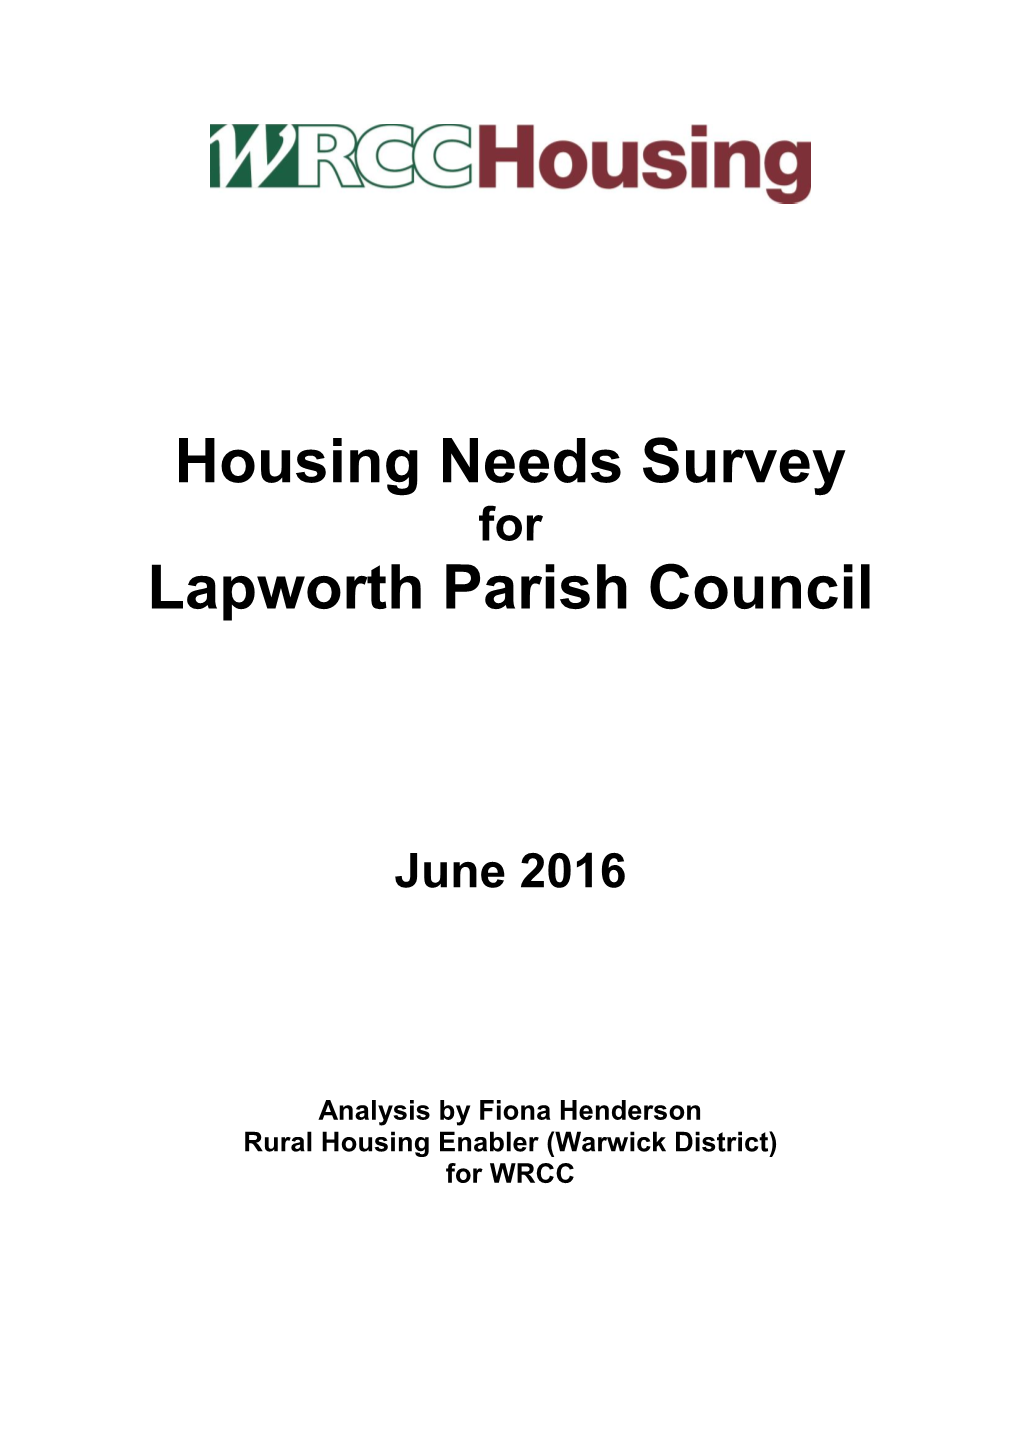 Lapworth Parish Council